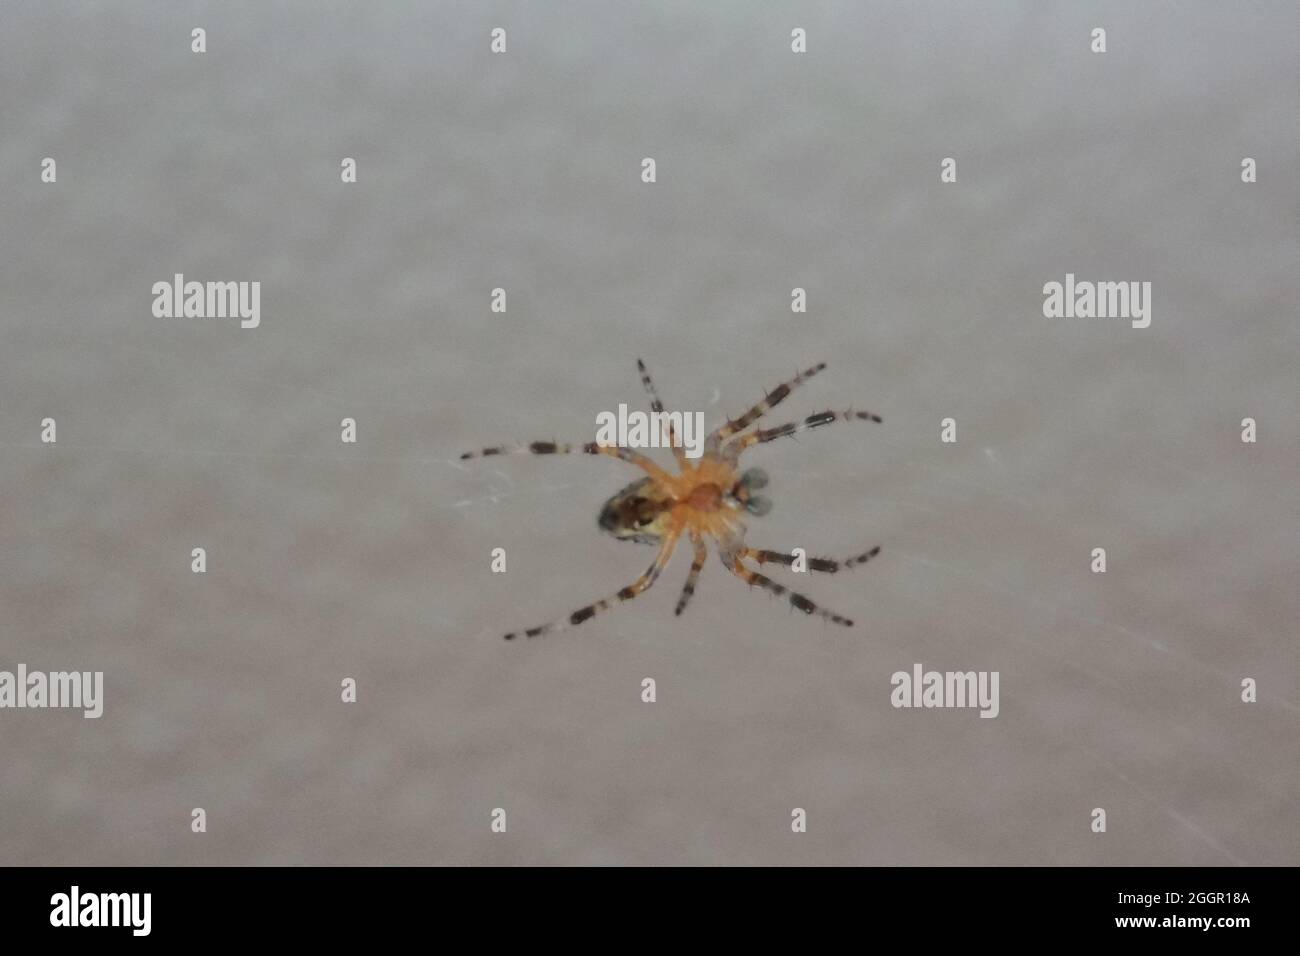 Kleines Insekt Spinne im Netz Foto Stock